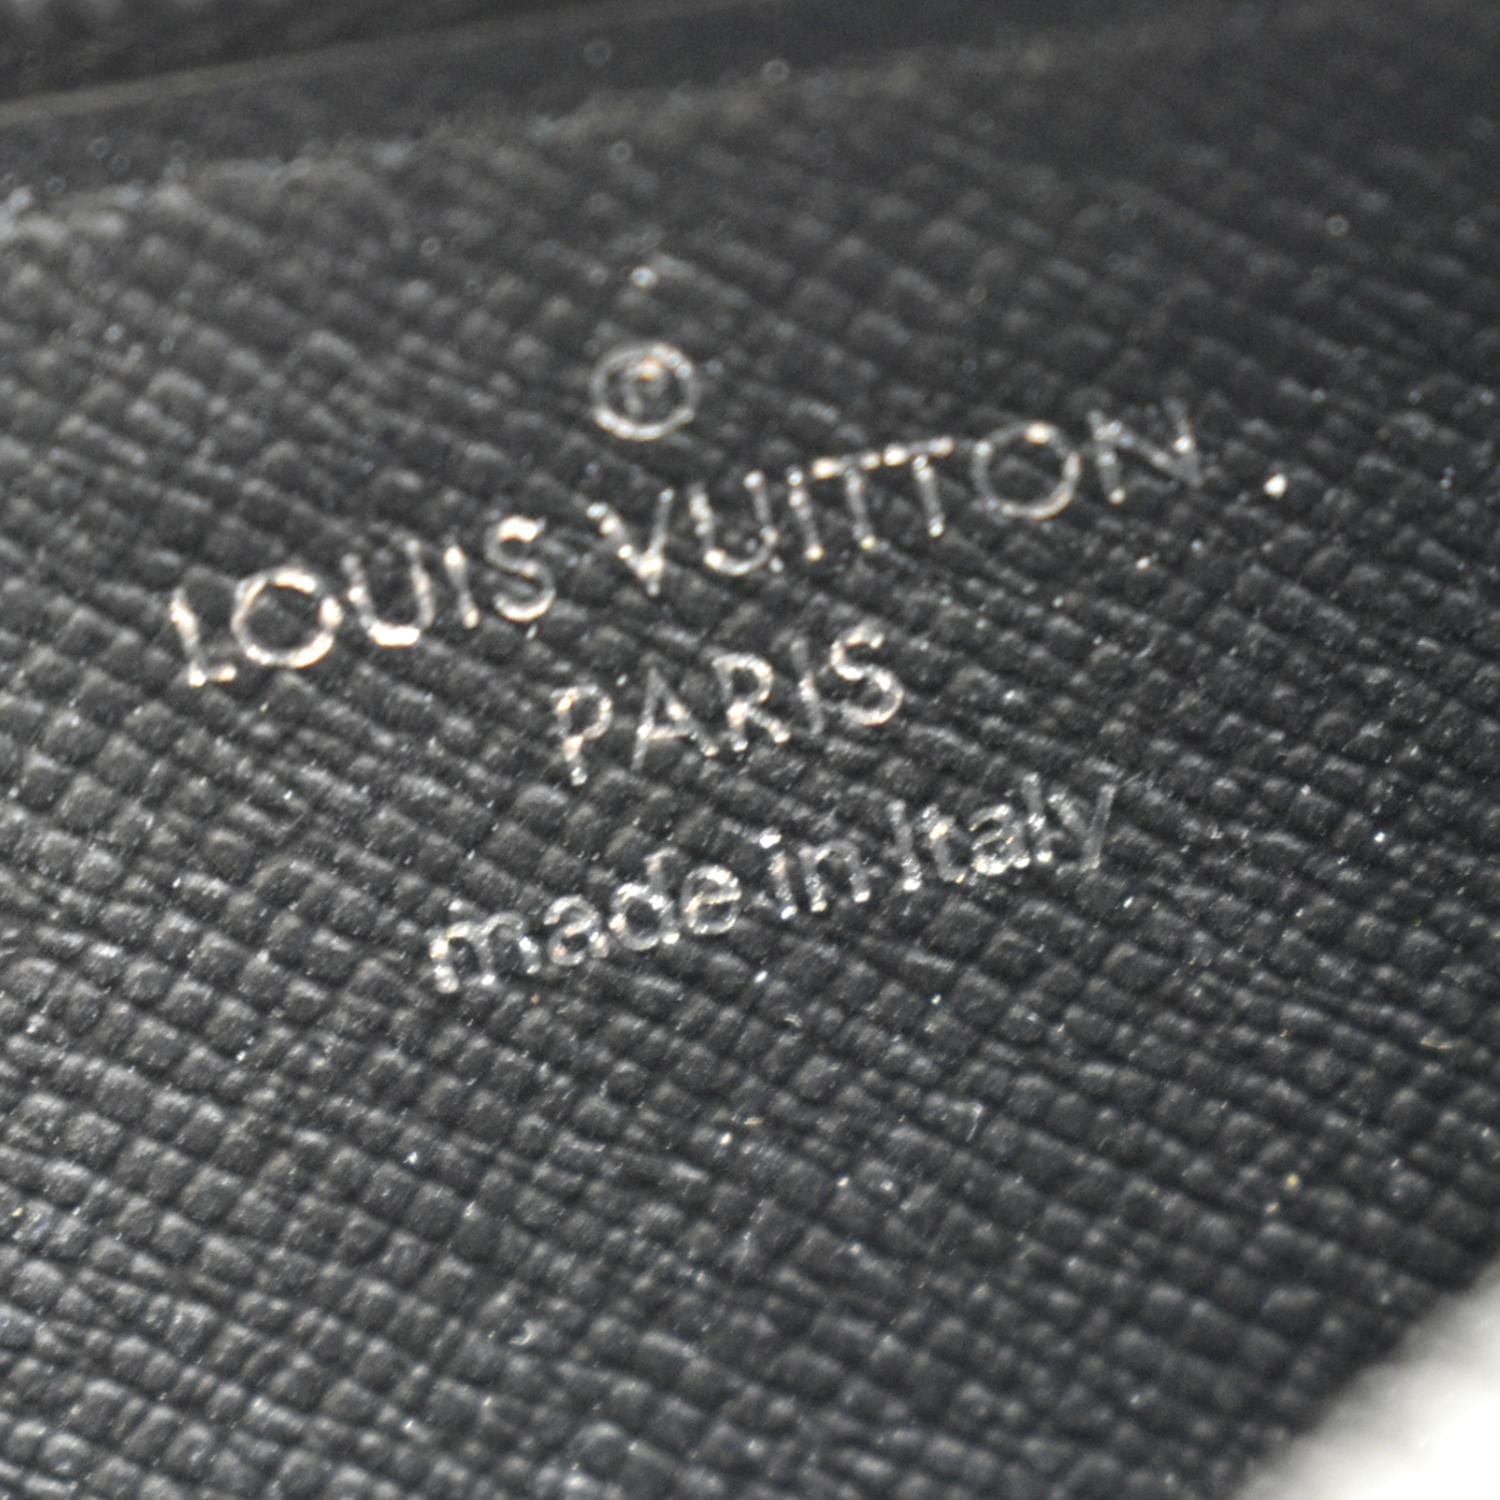 Louis Vuitton Double Card Holder Monogram Eclipse Canvas – STYLISHTOP